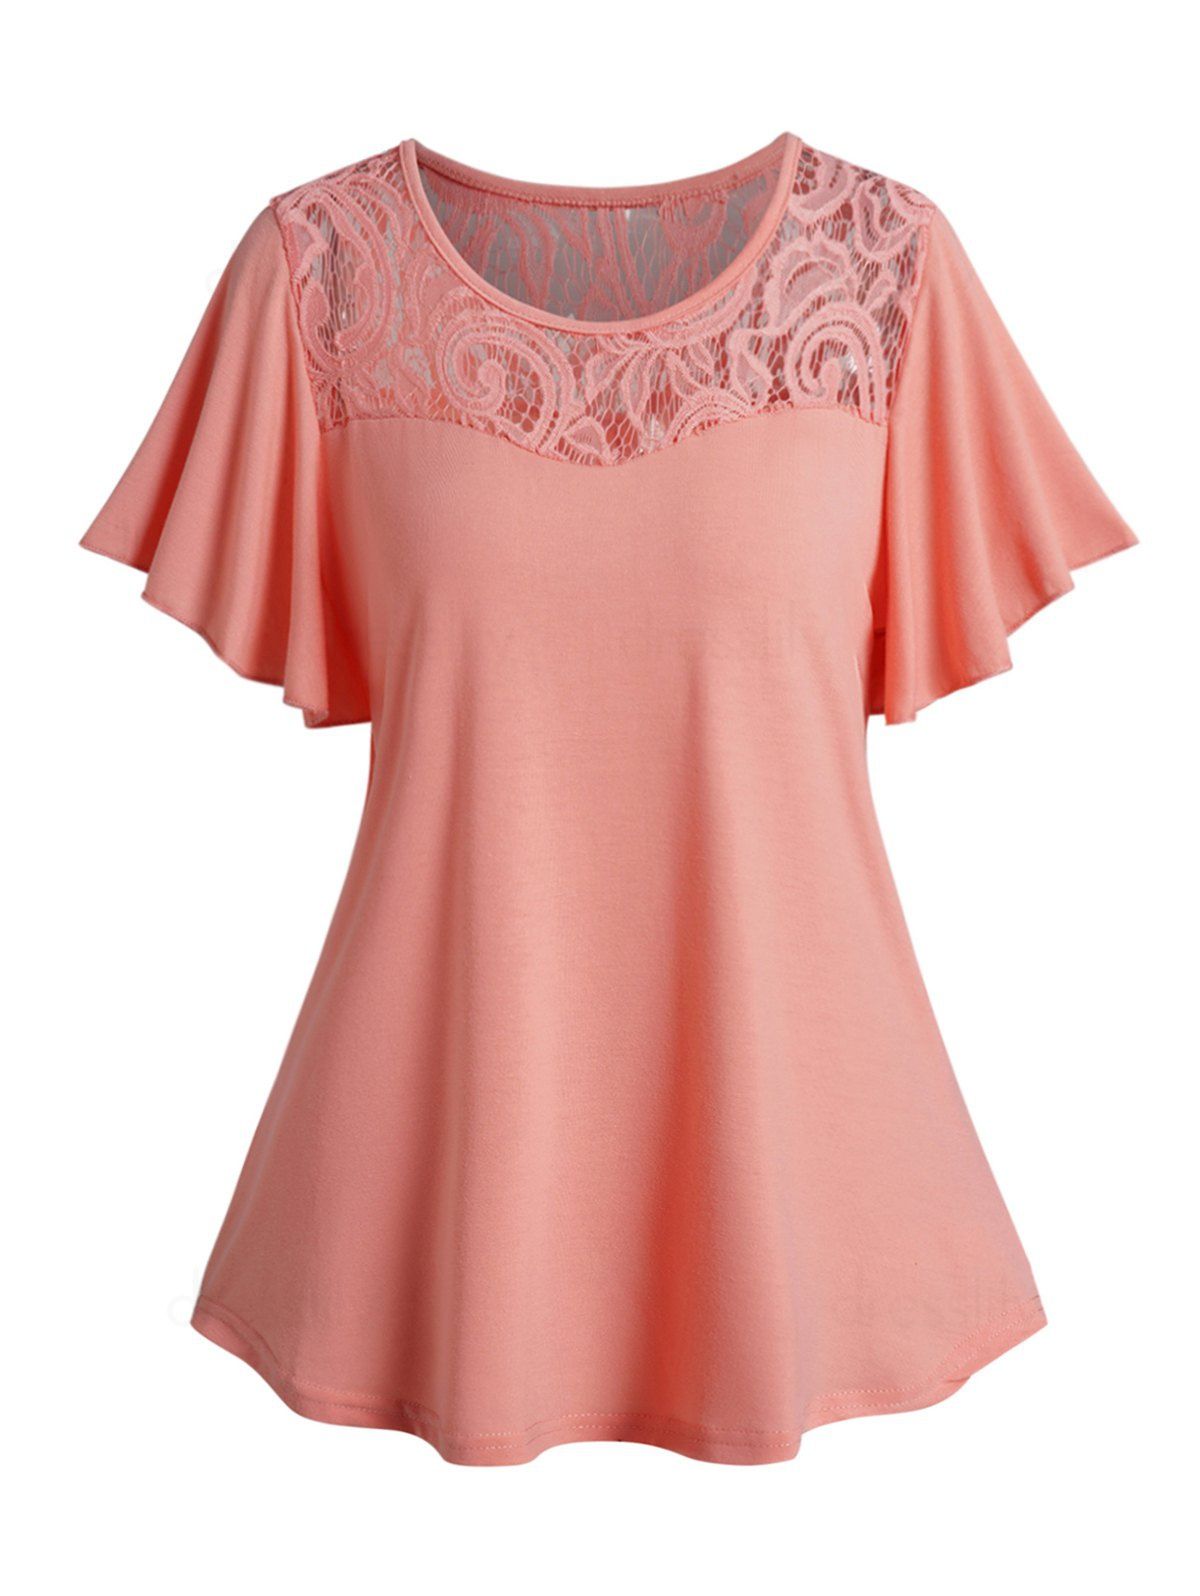 Dresslily Lace Panel T Shirt Plain Color Flutter Sleeve Round Neck Casual Top